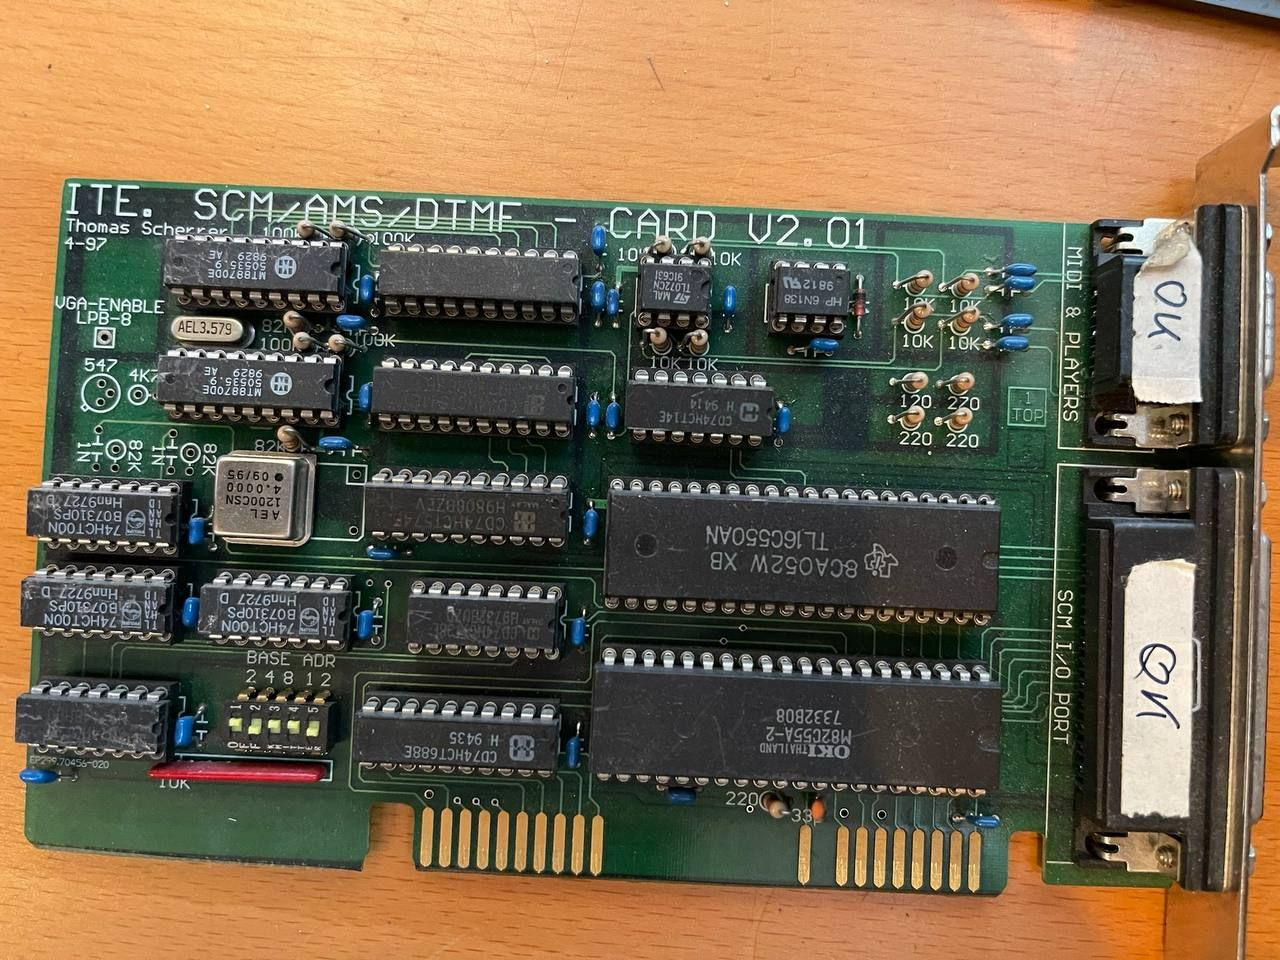 Фото той самой платы, которая использовалась с DOS-версией игры. Она содержит в себе DTMF-декодер сигналов и систему AMS. Источник: twitter-аккаунт разработчика @megakode